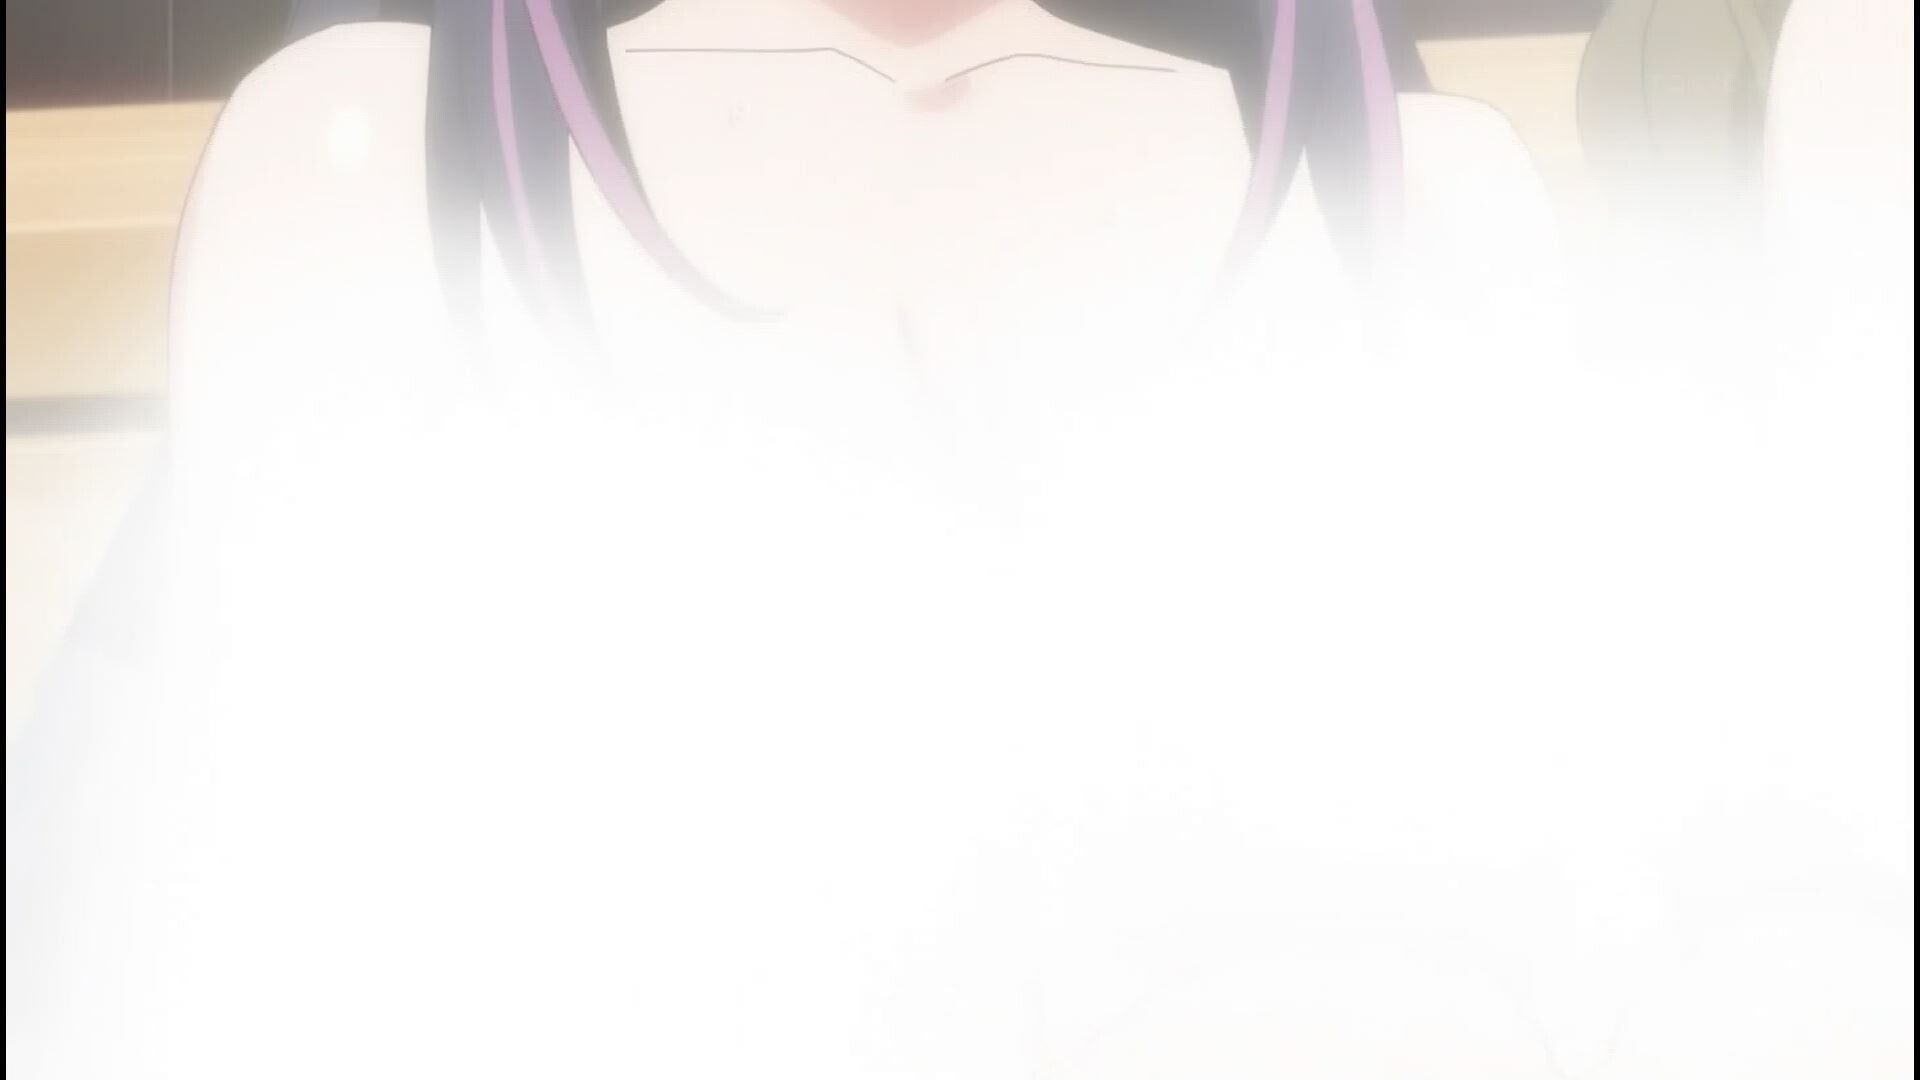 Anime [Kandagawa JETGIRLS] 8 episodes of girls erotic round-view bath bathing scene! 8